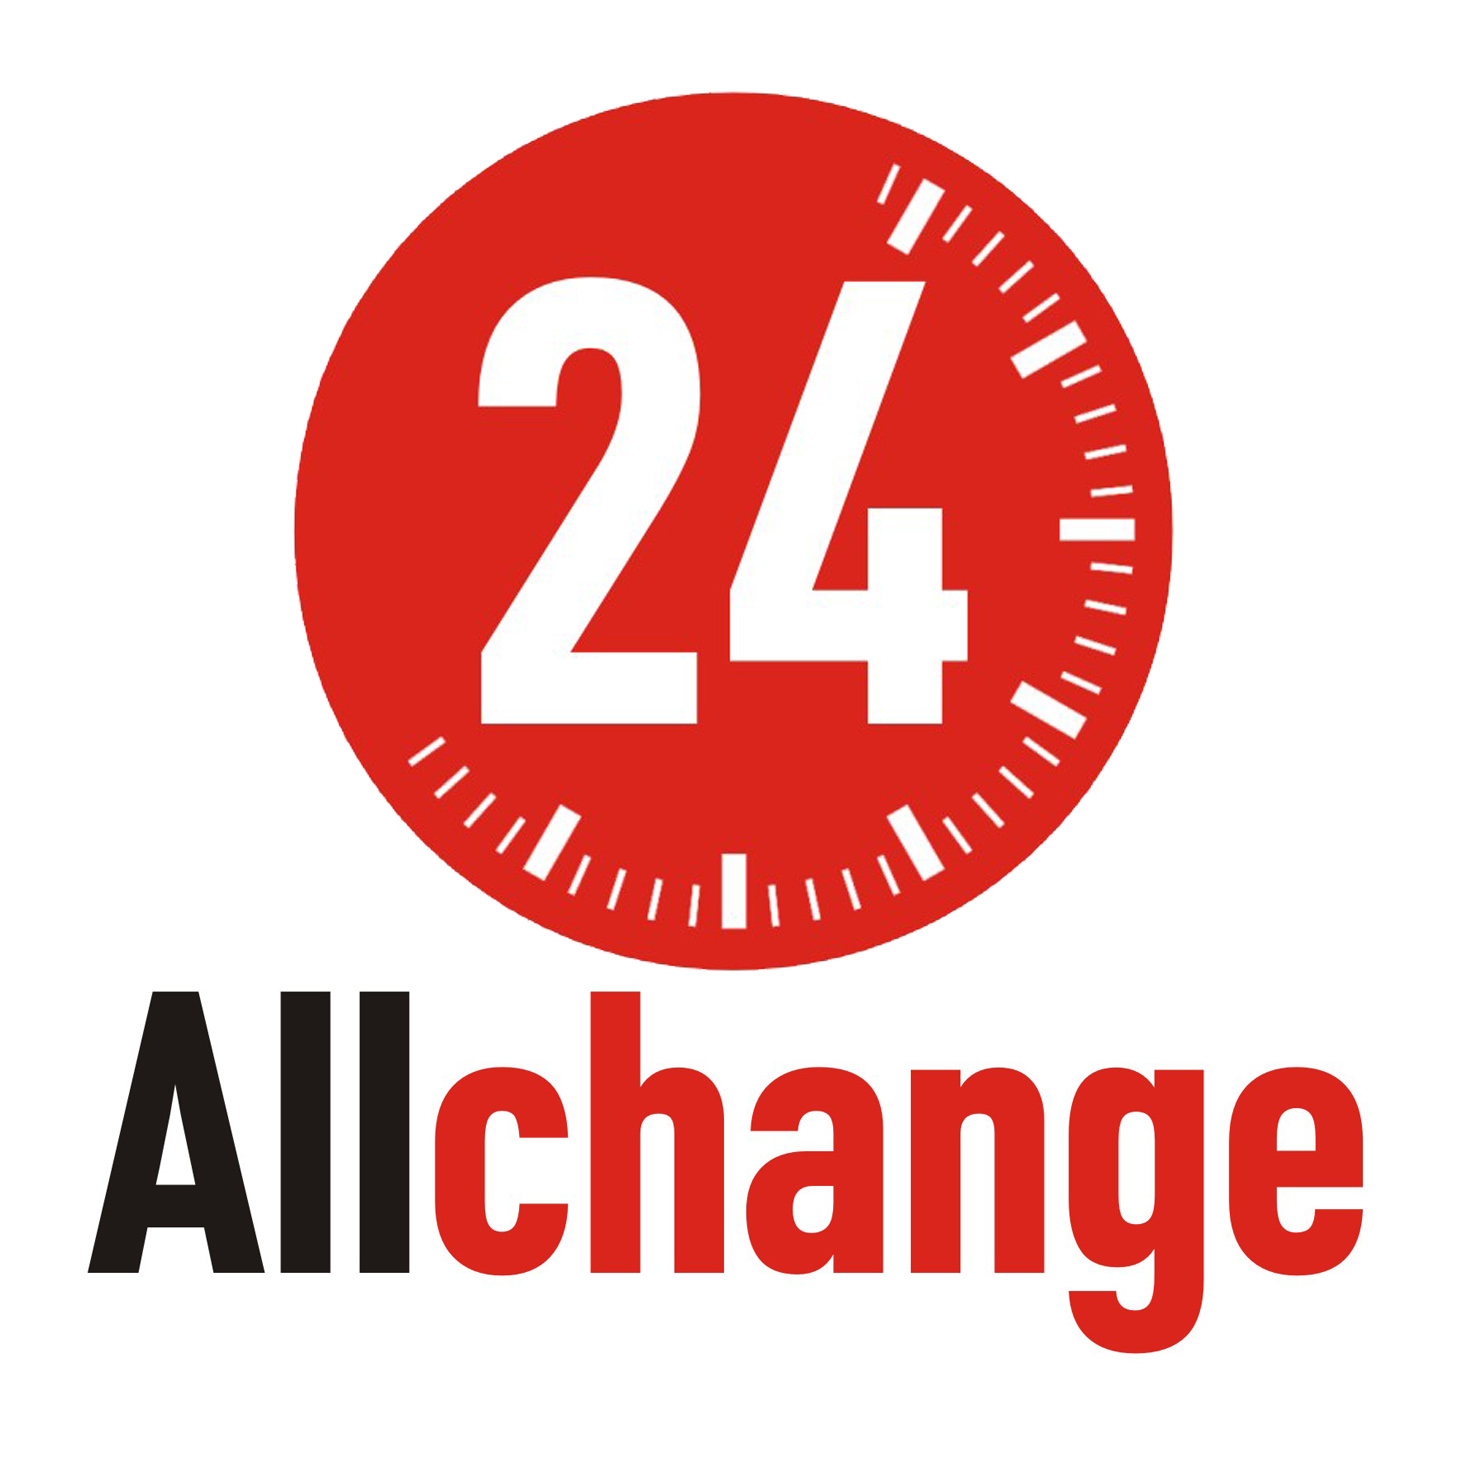 allchange24